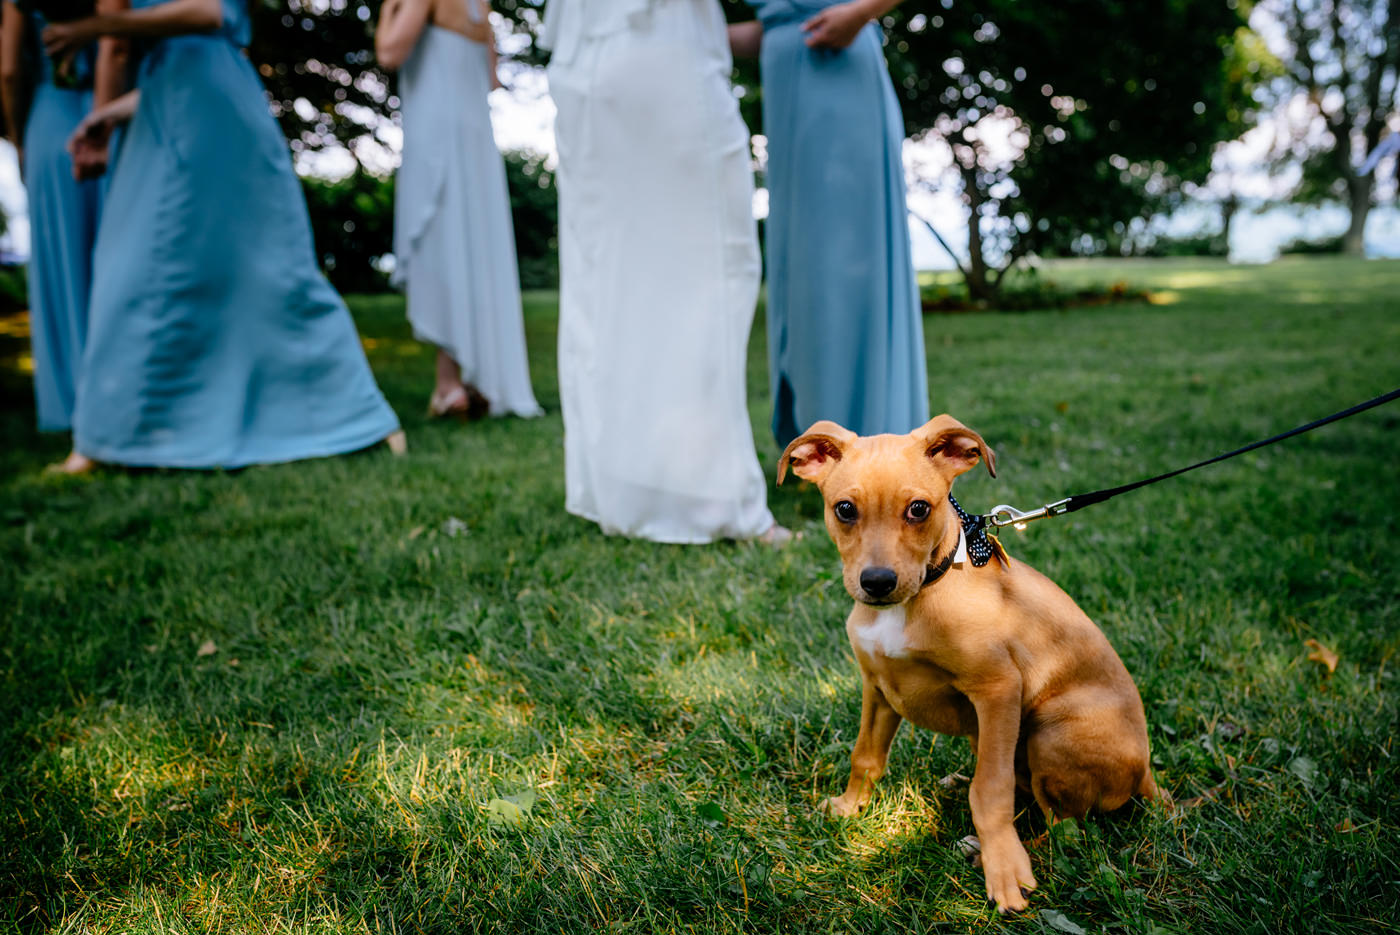 wedding ceremonies with puppies